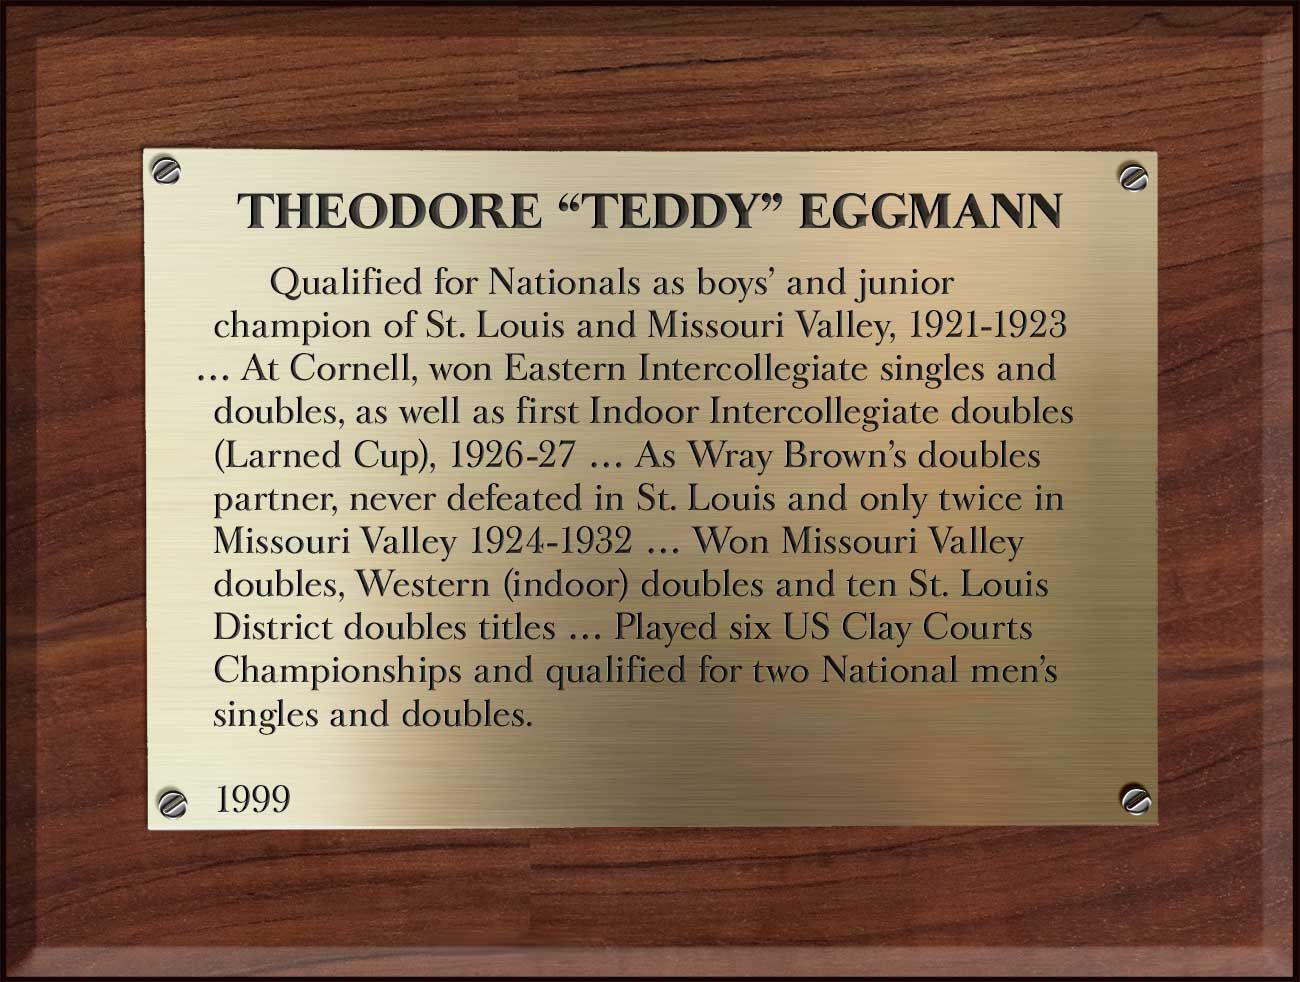 Ted Eggmann